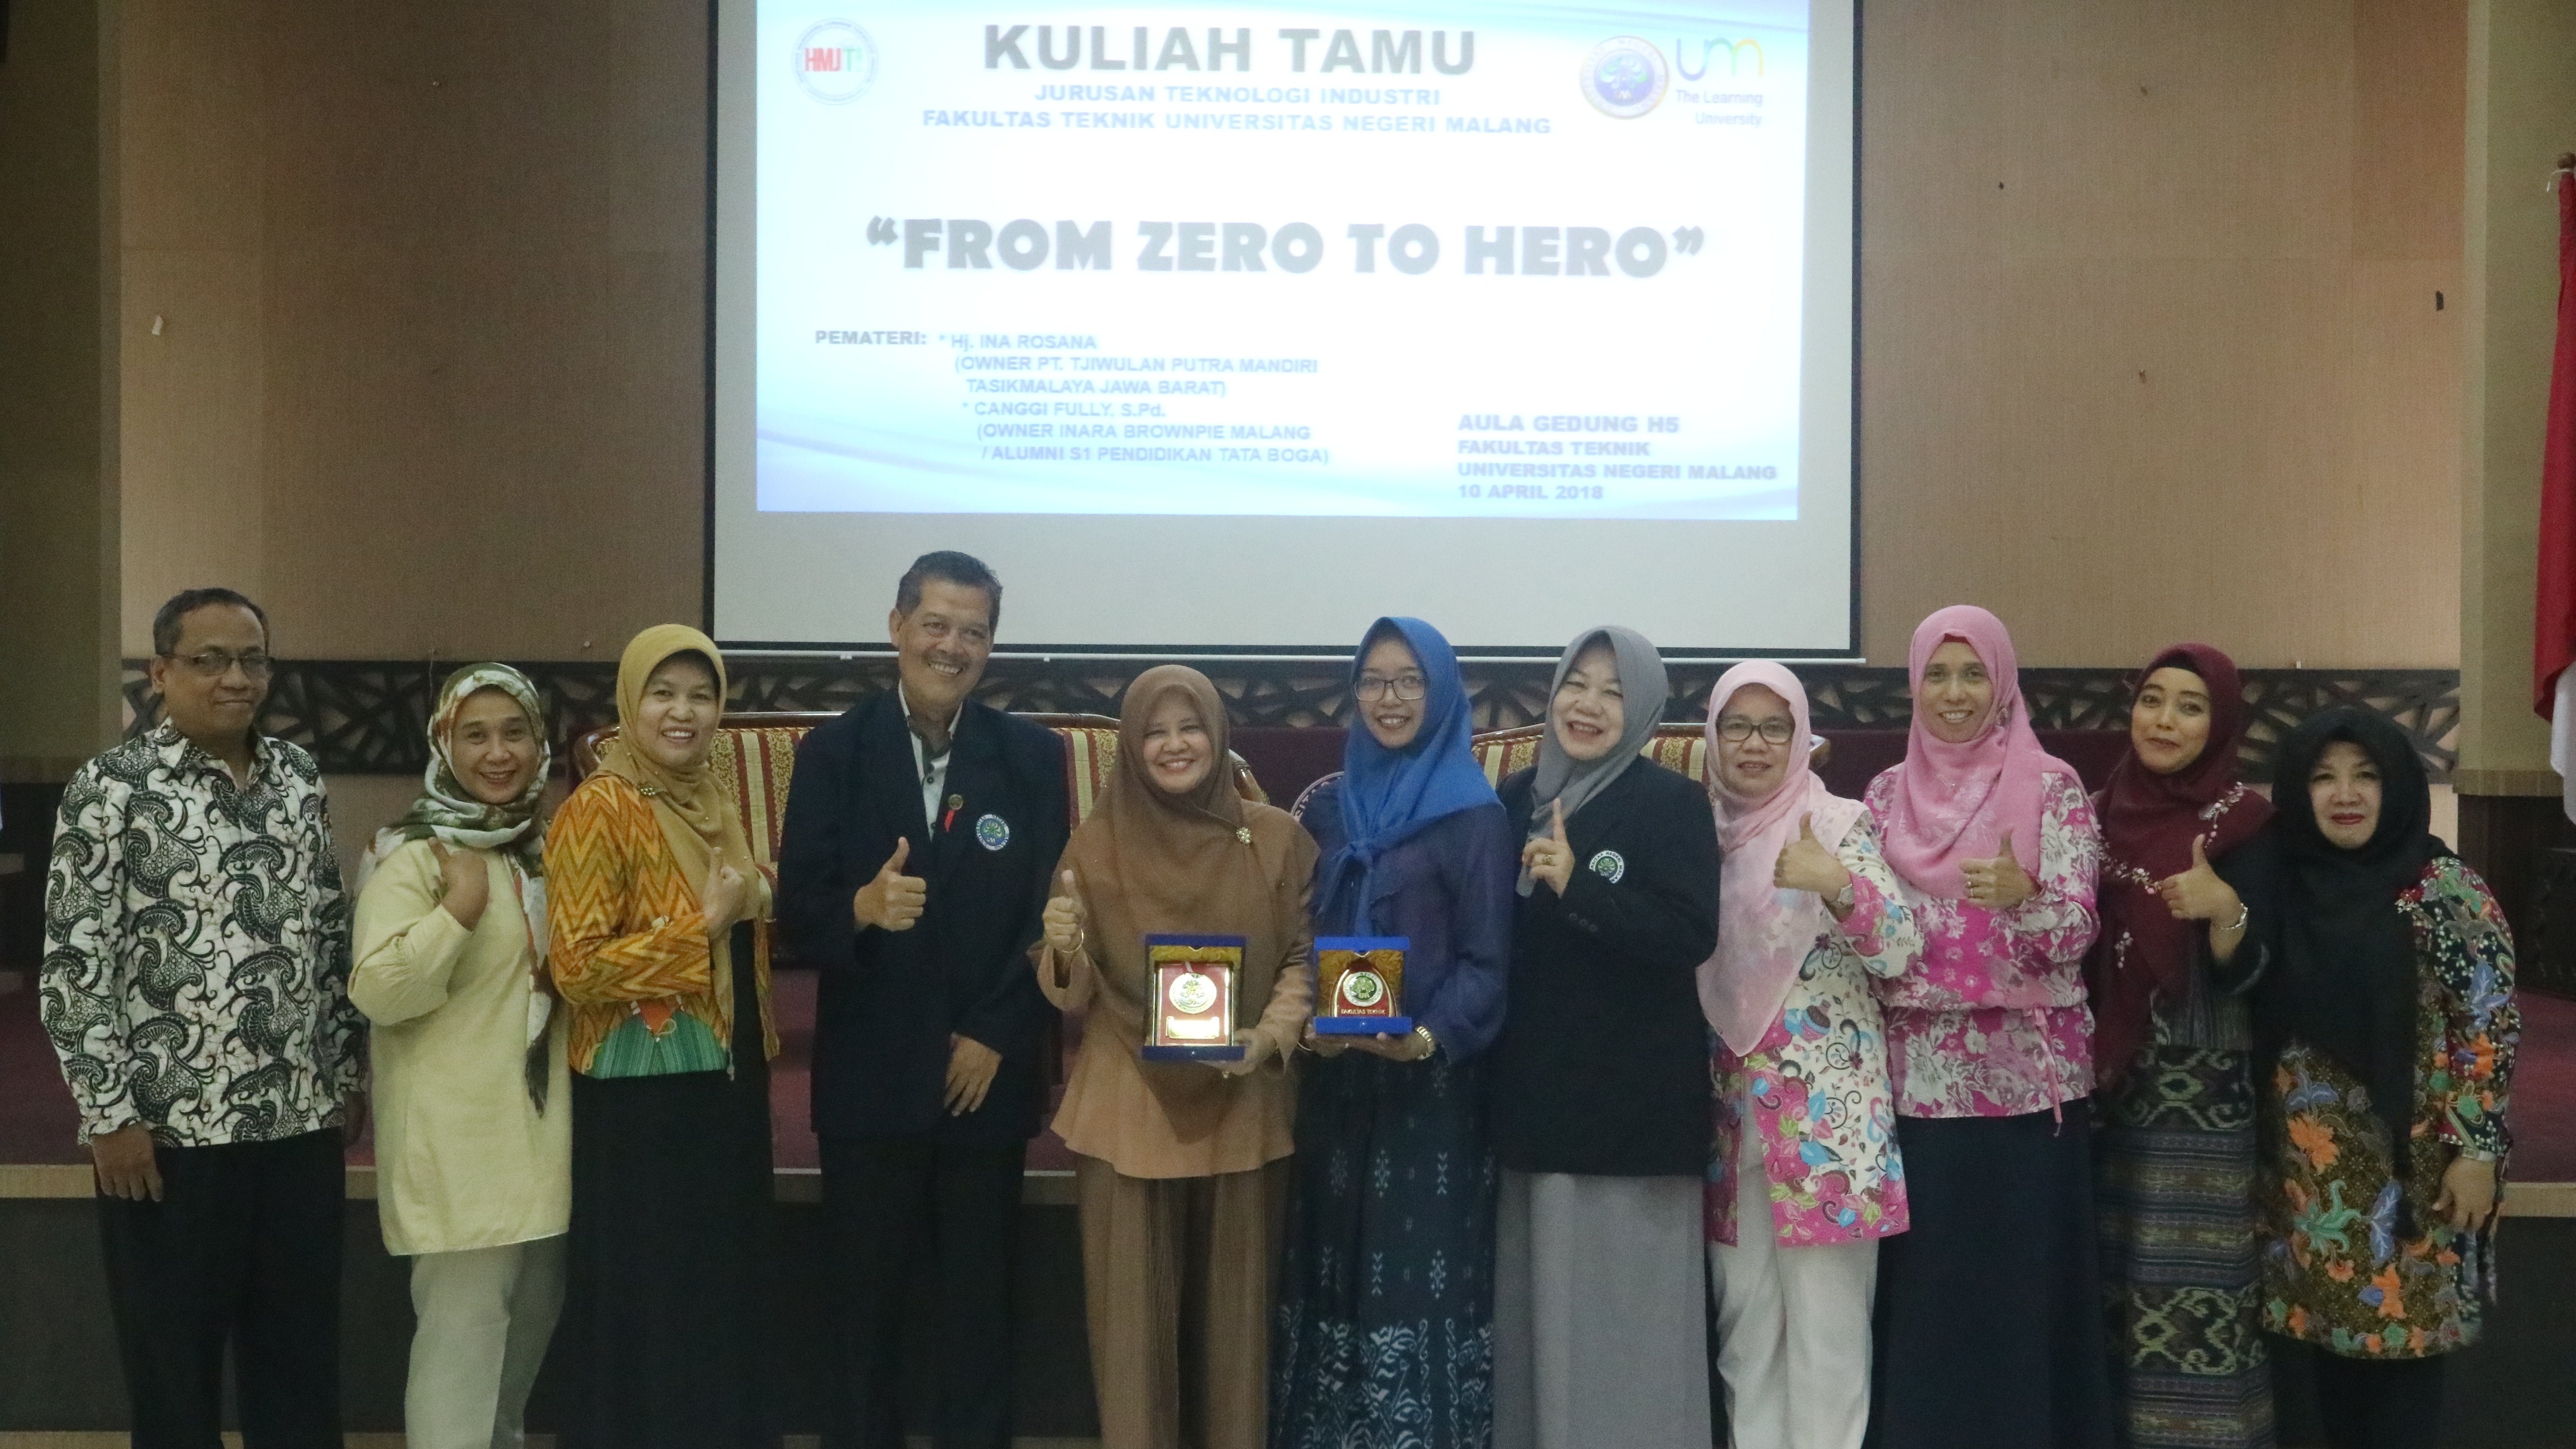 Kuliah Tamu “From Zero to Hero” Tahun 2018